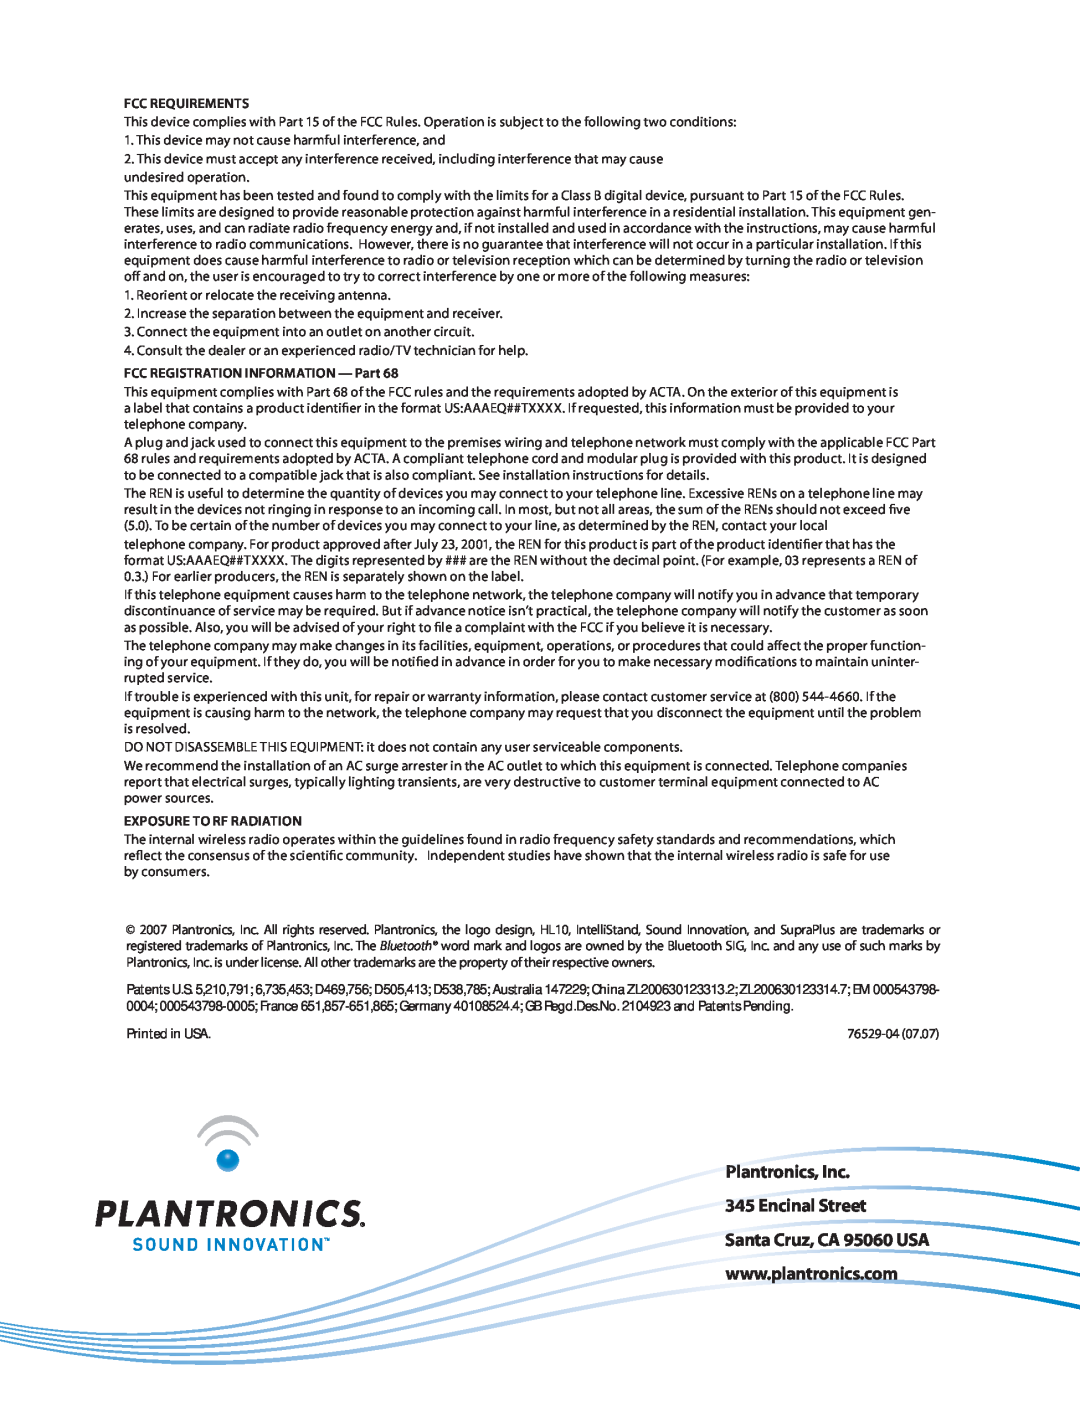 Plantronics CS351N setup guide Plantronics, Inc 345 Encinal Street, Fcc Requirements, FCC REGISTRATION INFORMATION - Part 